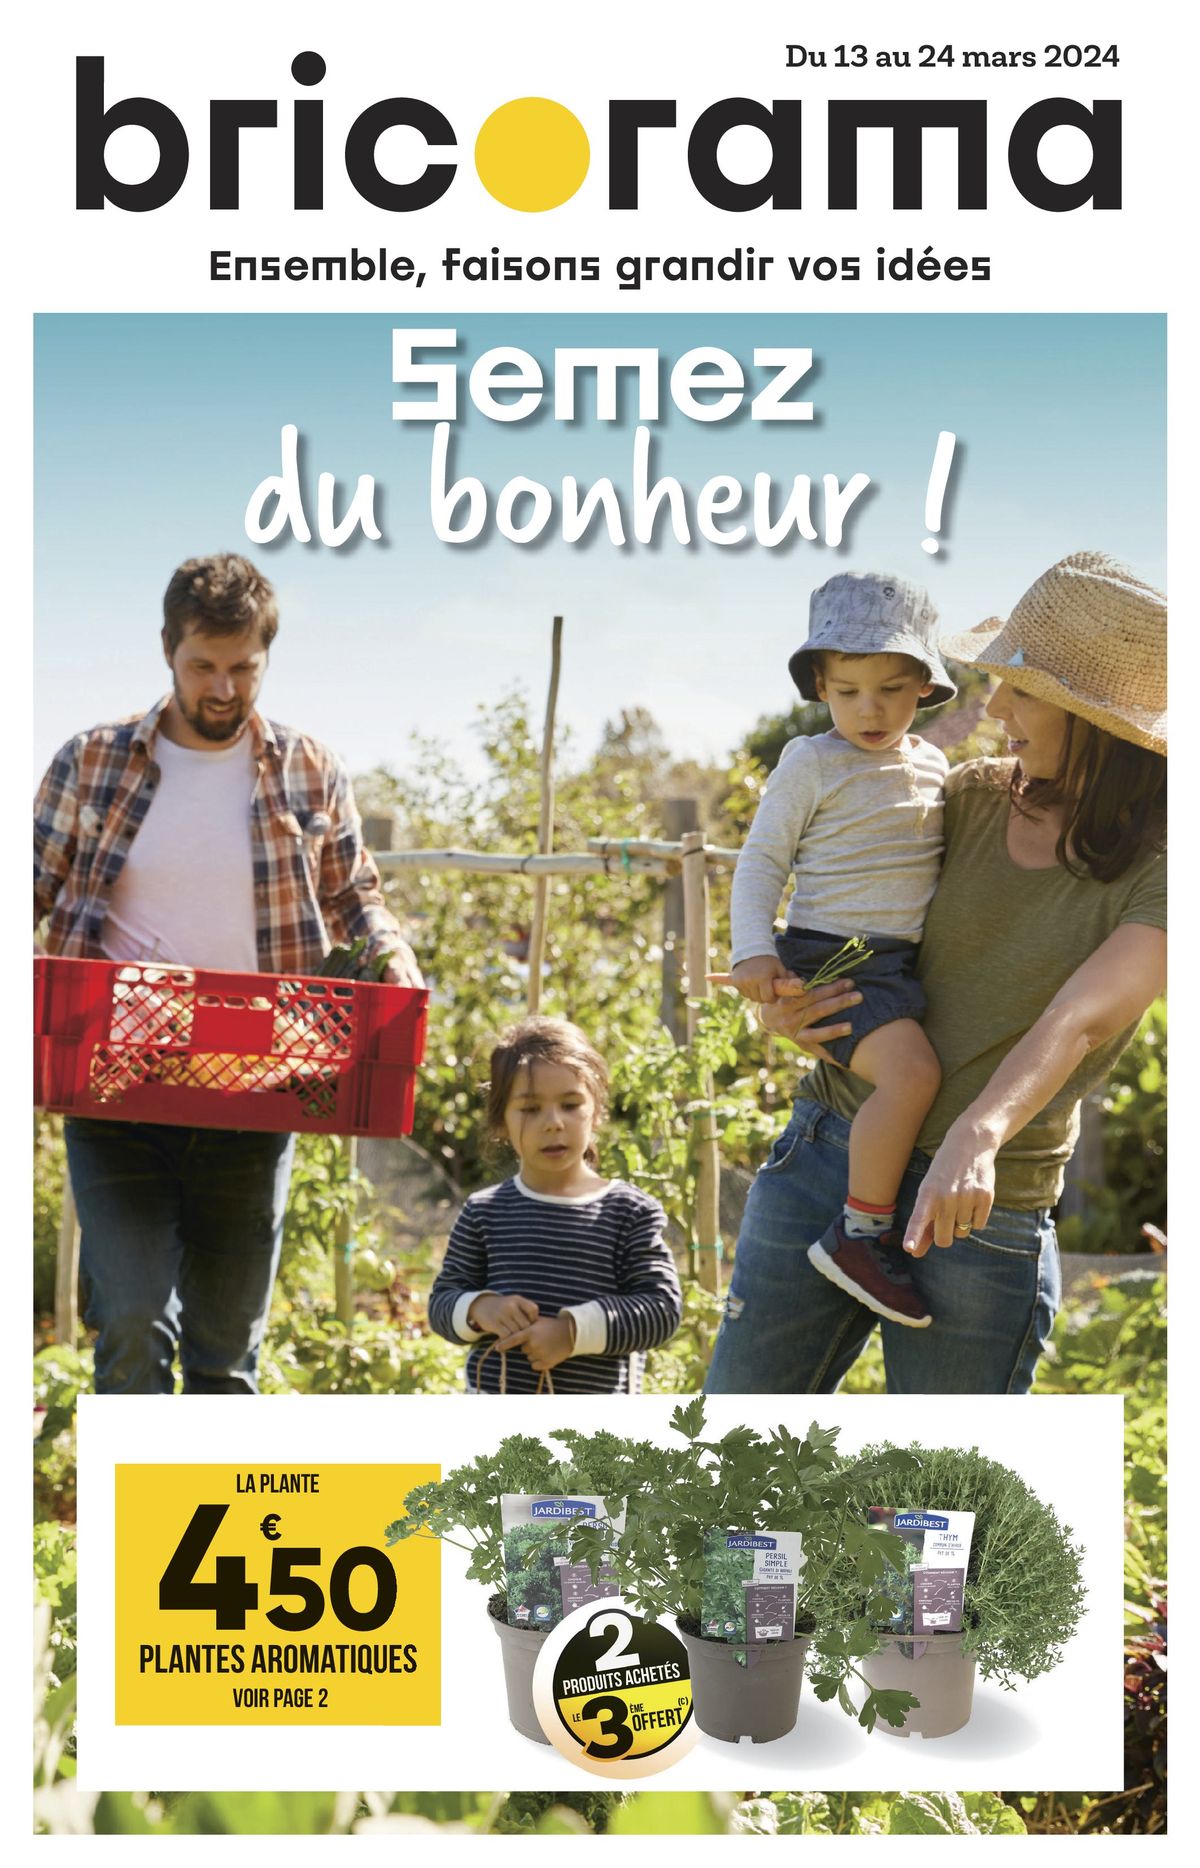 Catalogue Semez du bonheur !, page 00001